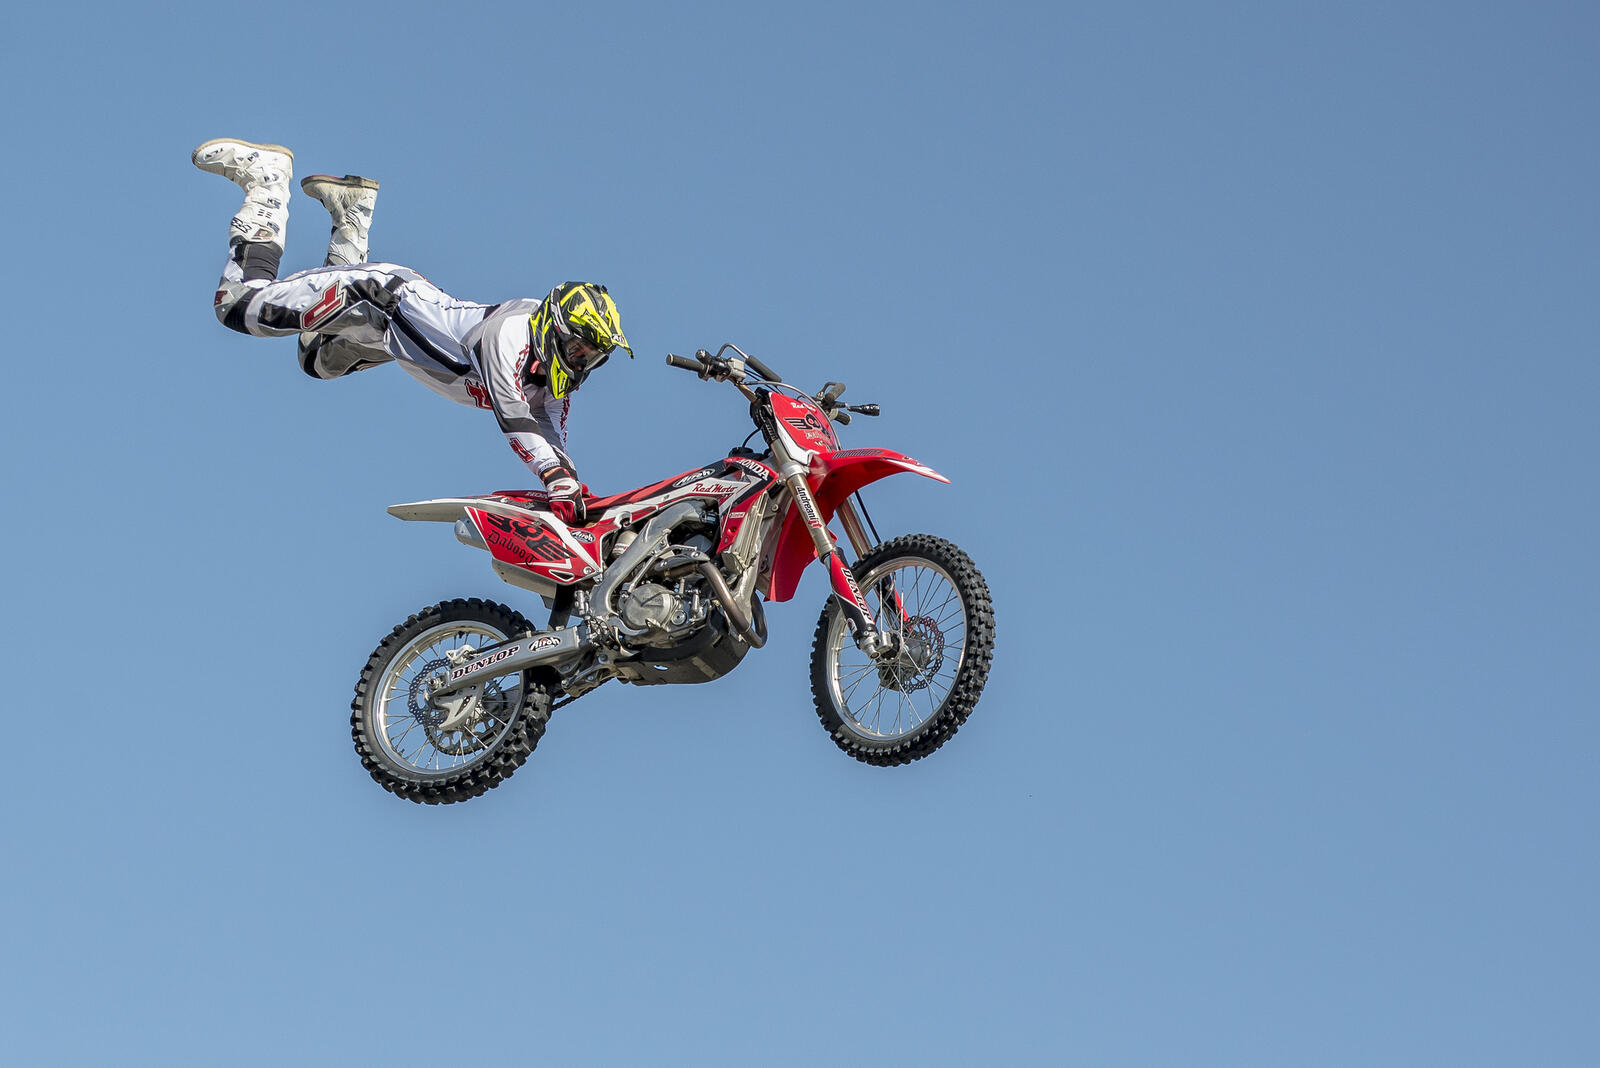 免费照片下载屏幕保护程序 stunt, motocross 到您的手机上 免费